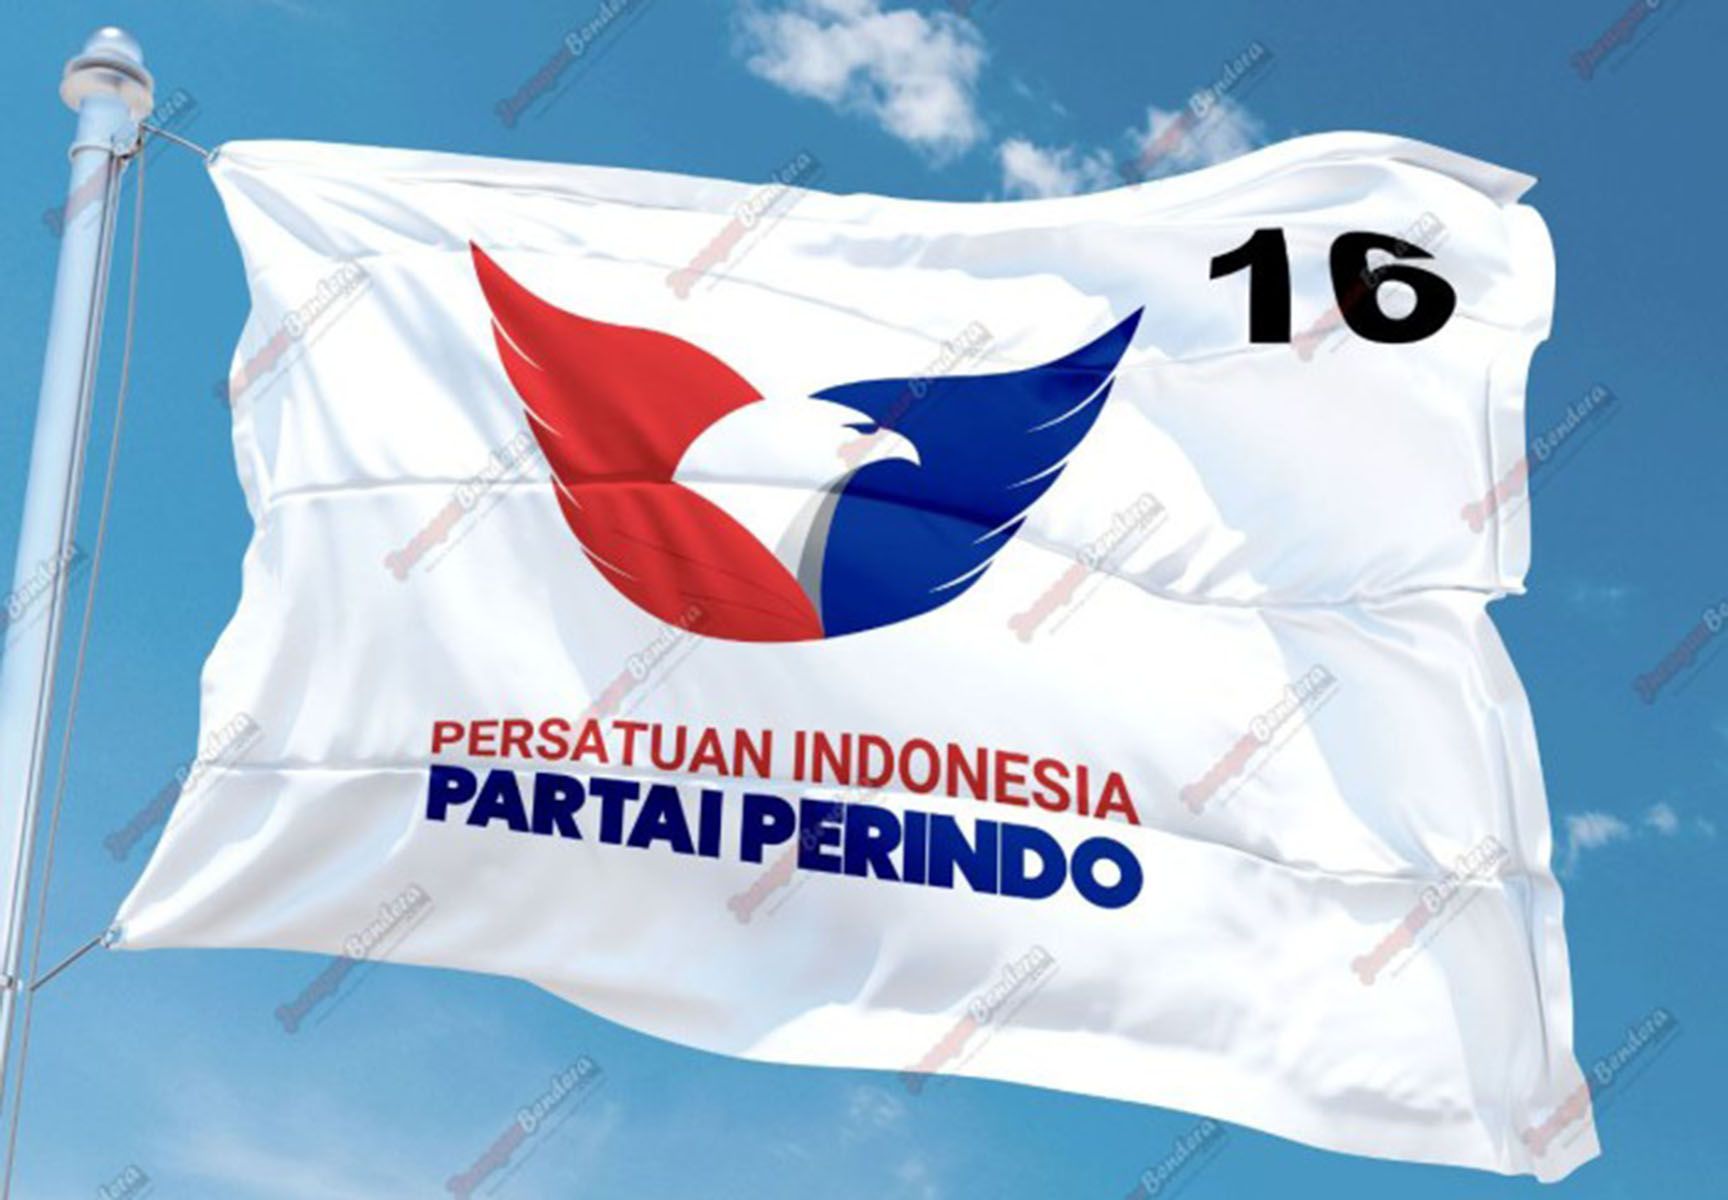 Bendera Partai Persatuan Indonesia (Perindo).